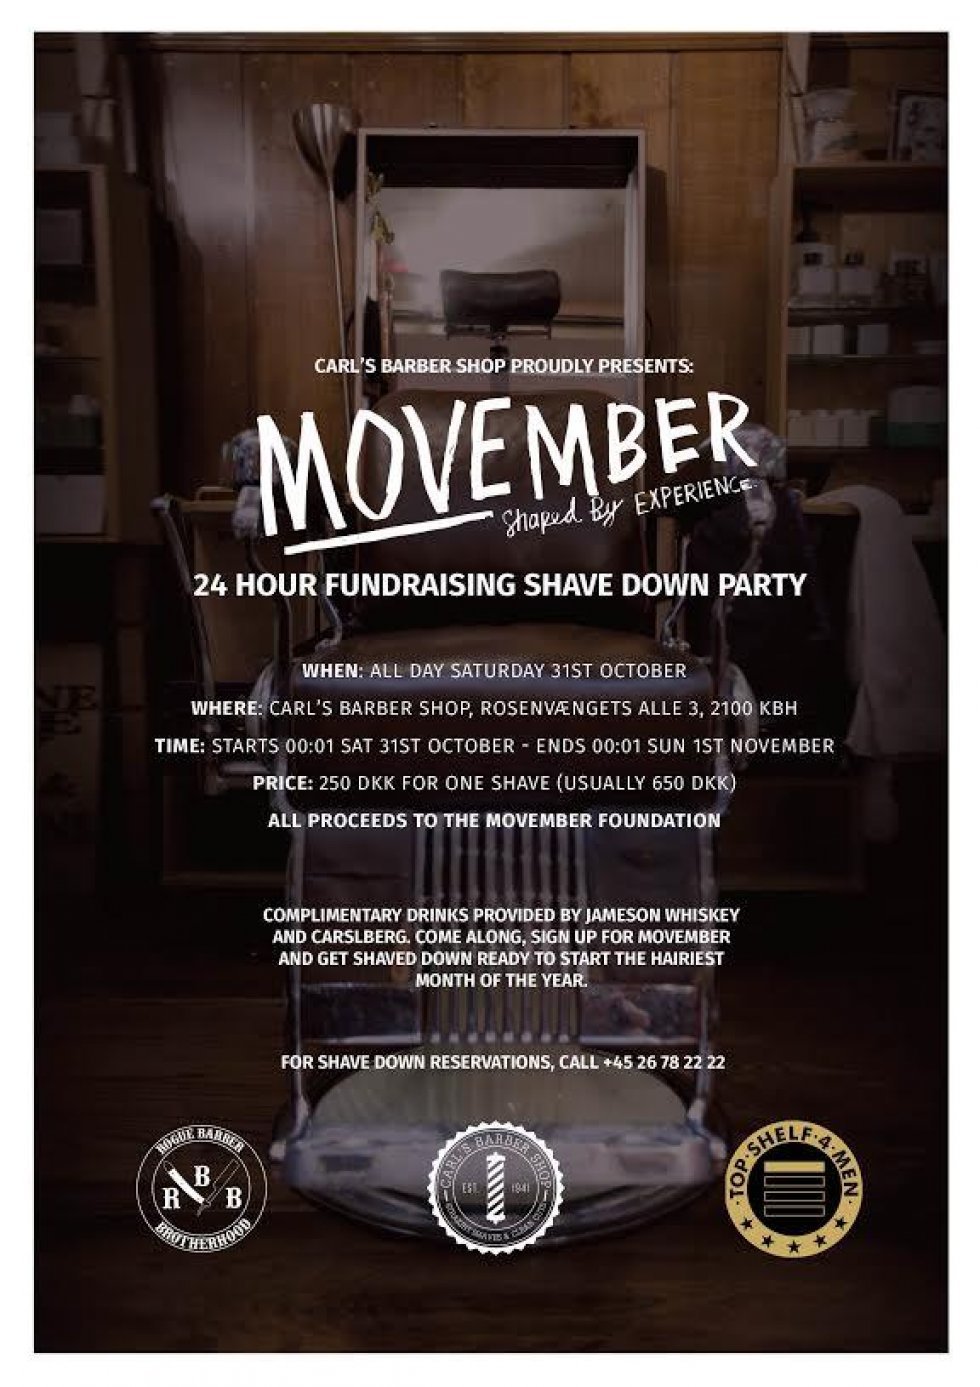 Movember-kickstart: Shave Down Events i landets største byer